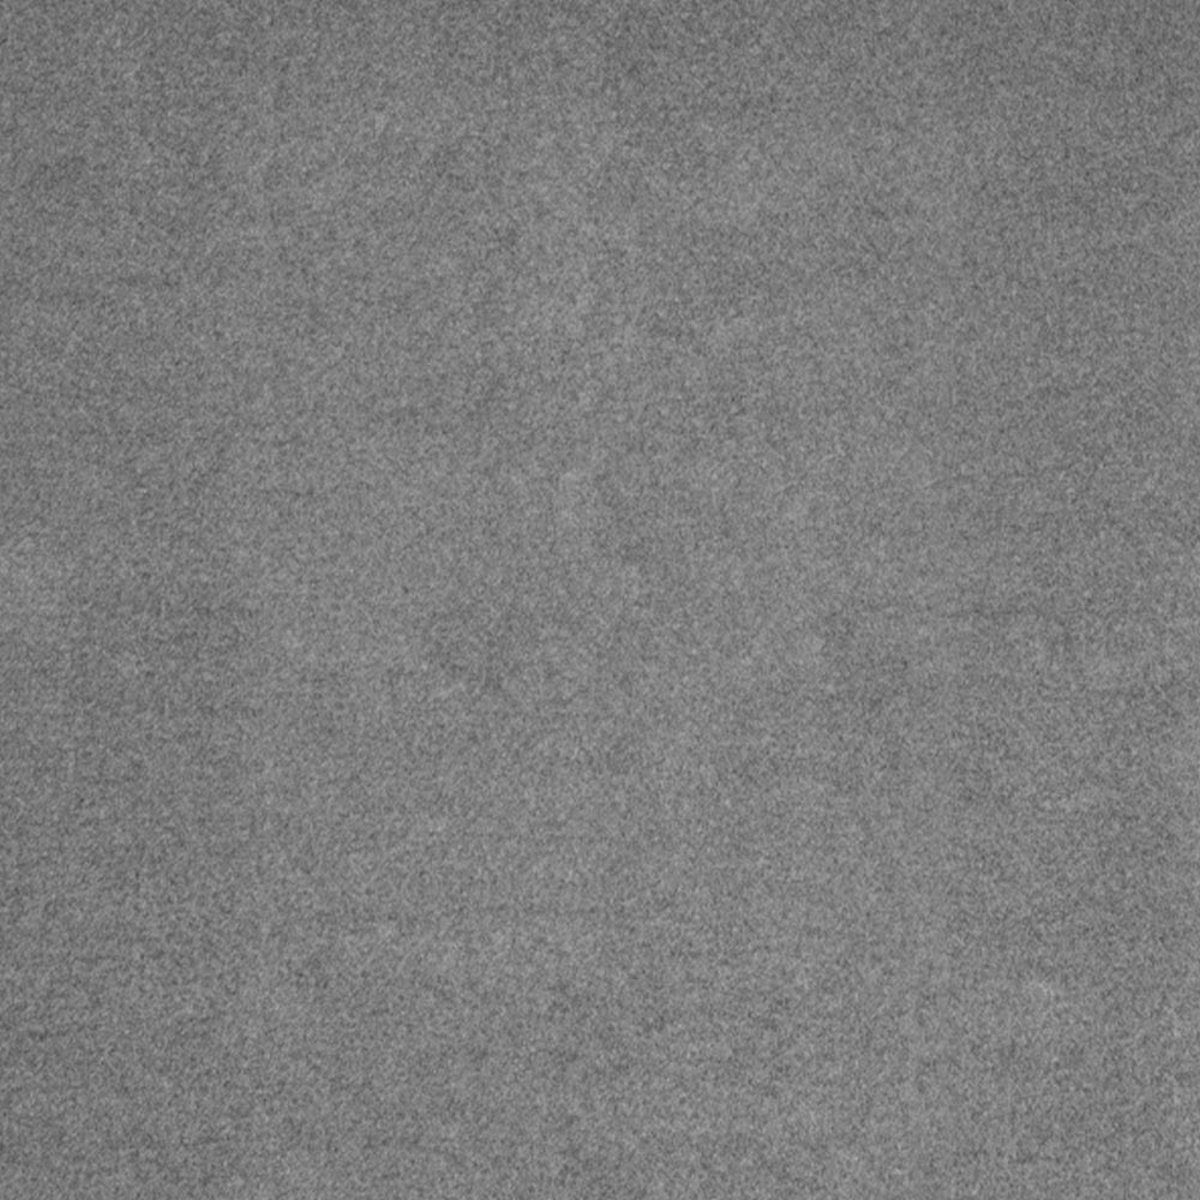 Grau wärmend Kuscheldecke 810 Wohndecke und Kuschelweich Estella, 160x200, Trevi Estella angenehm Wohndecke Schlafdecke